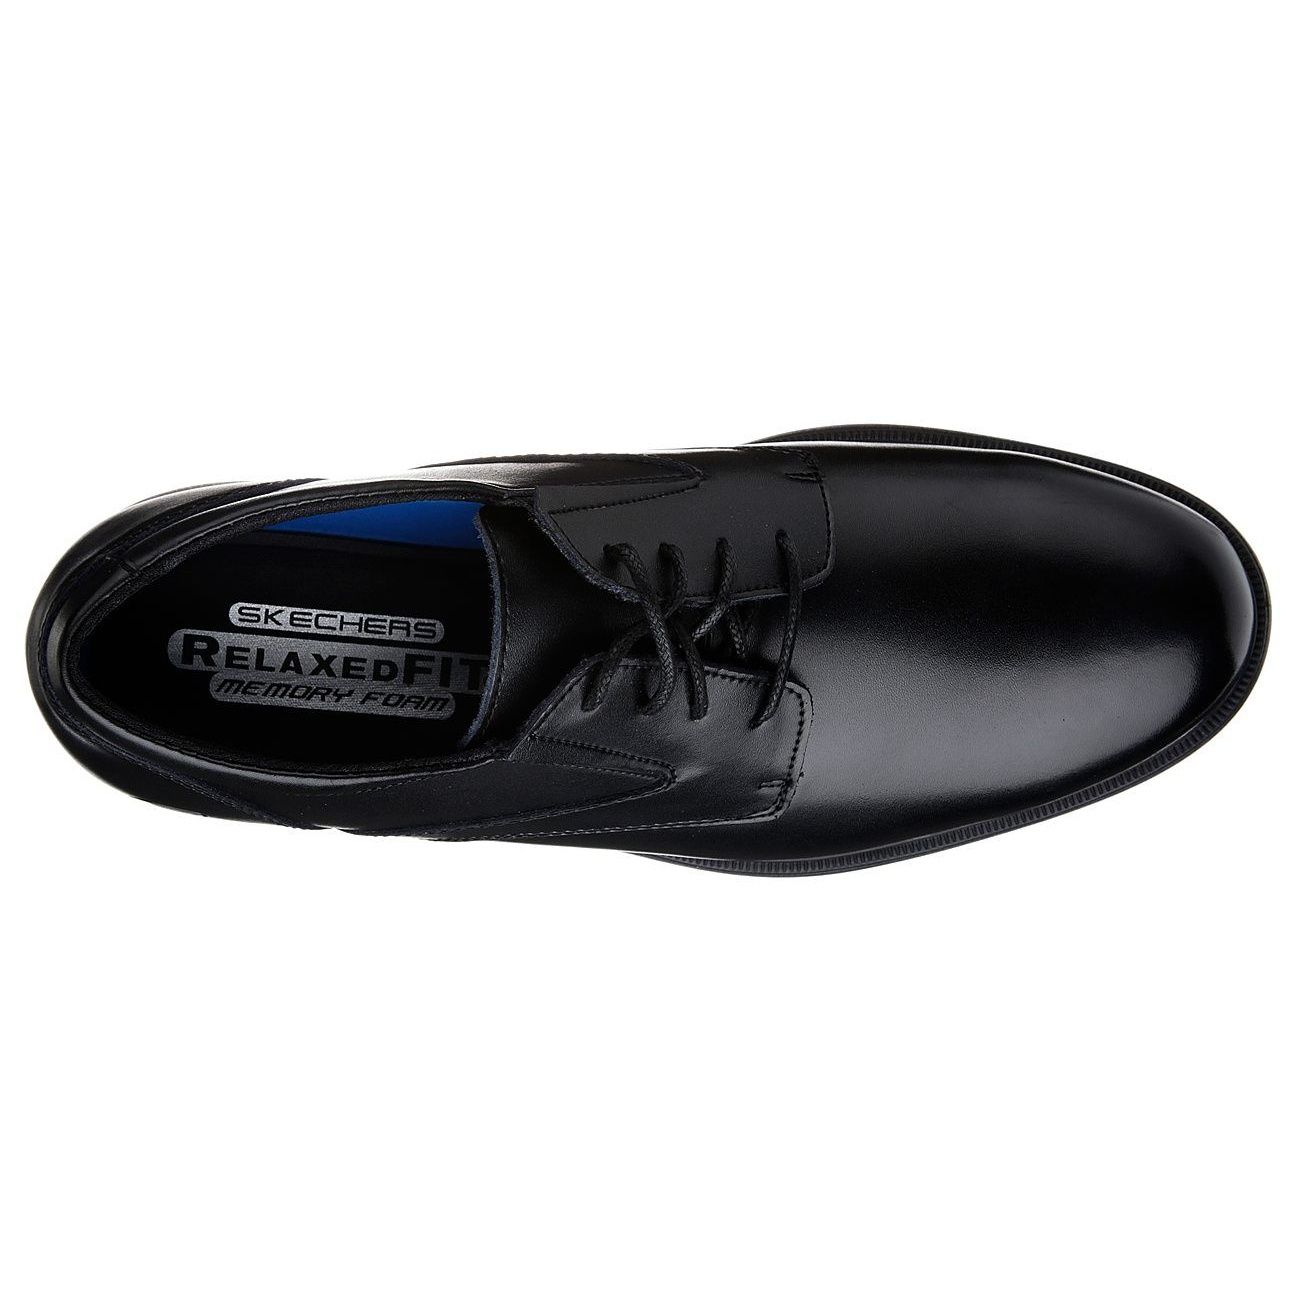 کفش راحتی مردانه اسکچرز مدل REVELT - REMEX